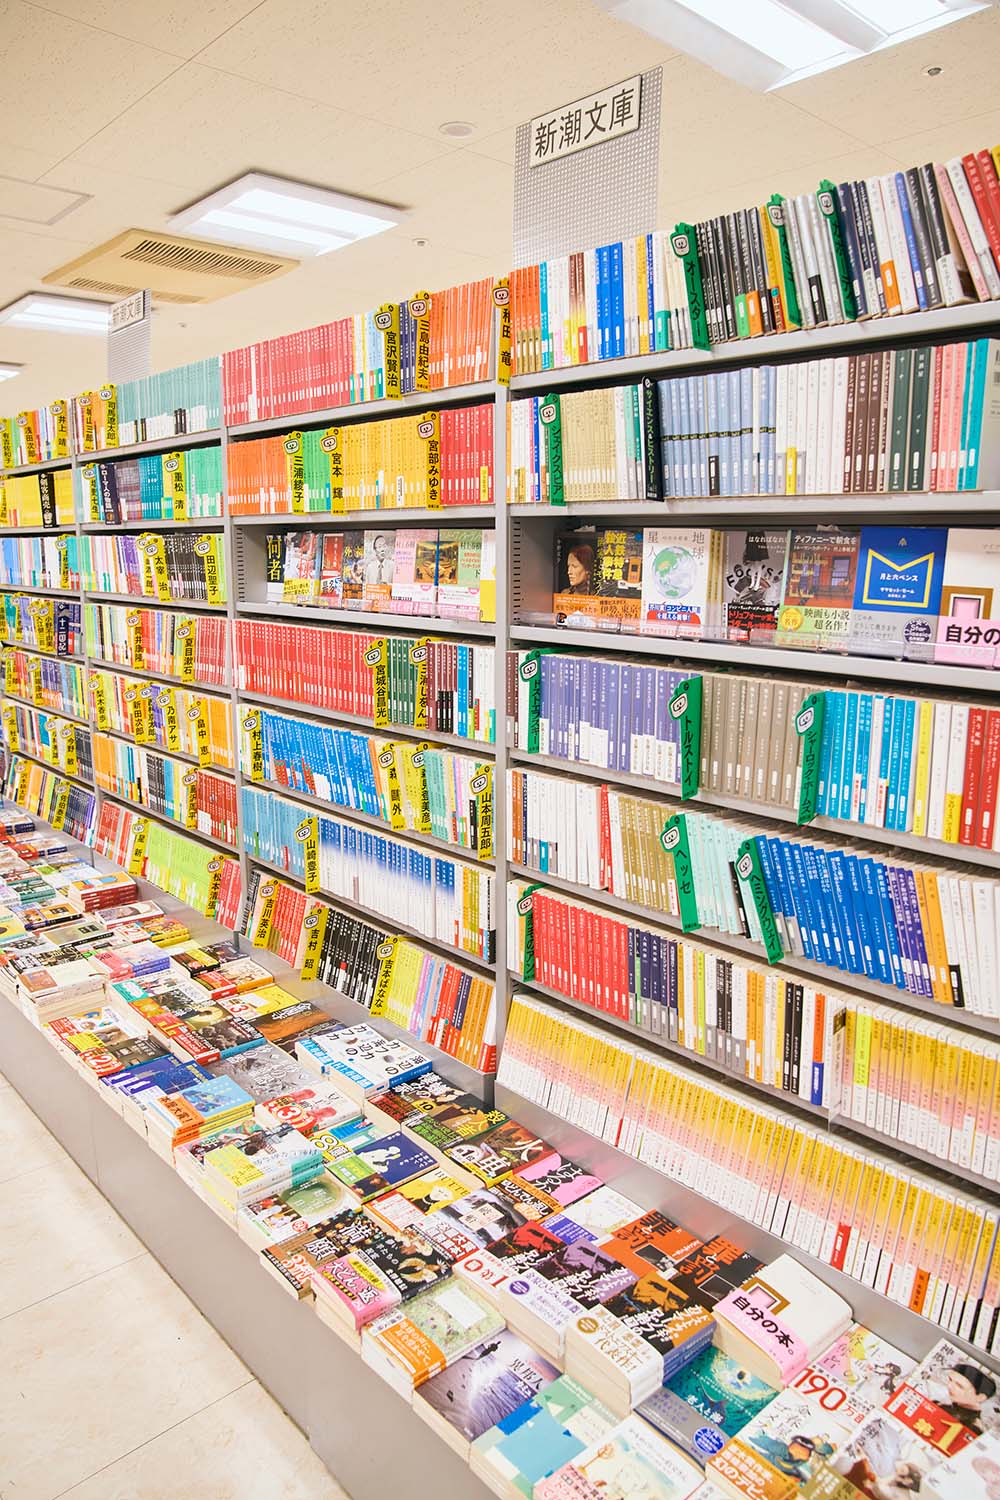 近隣のキャンパスに通う学生の利用も多いため、幅広いジャンルを取り扱う文庫本の棚。